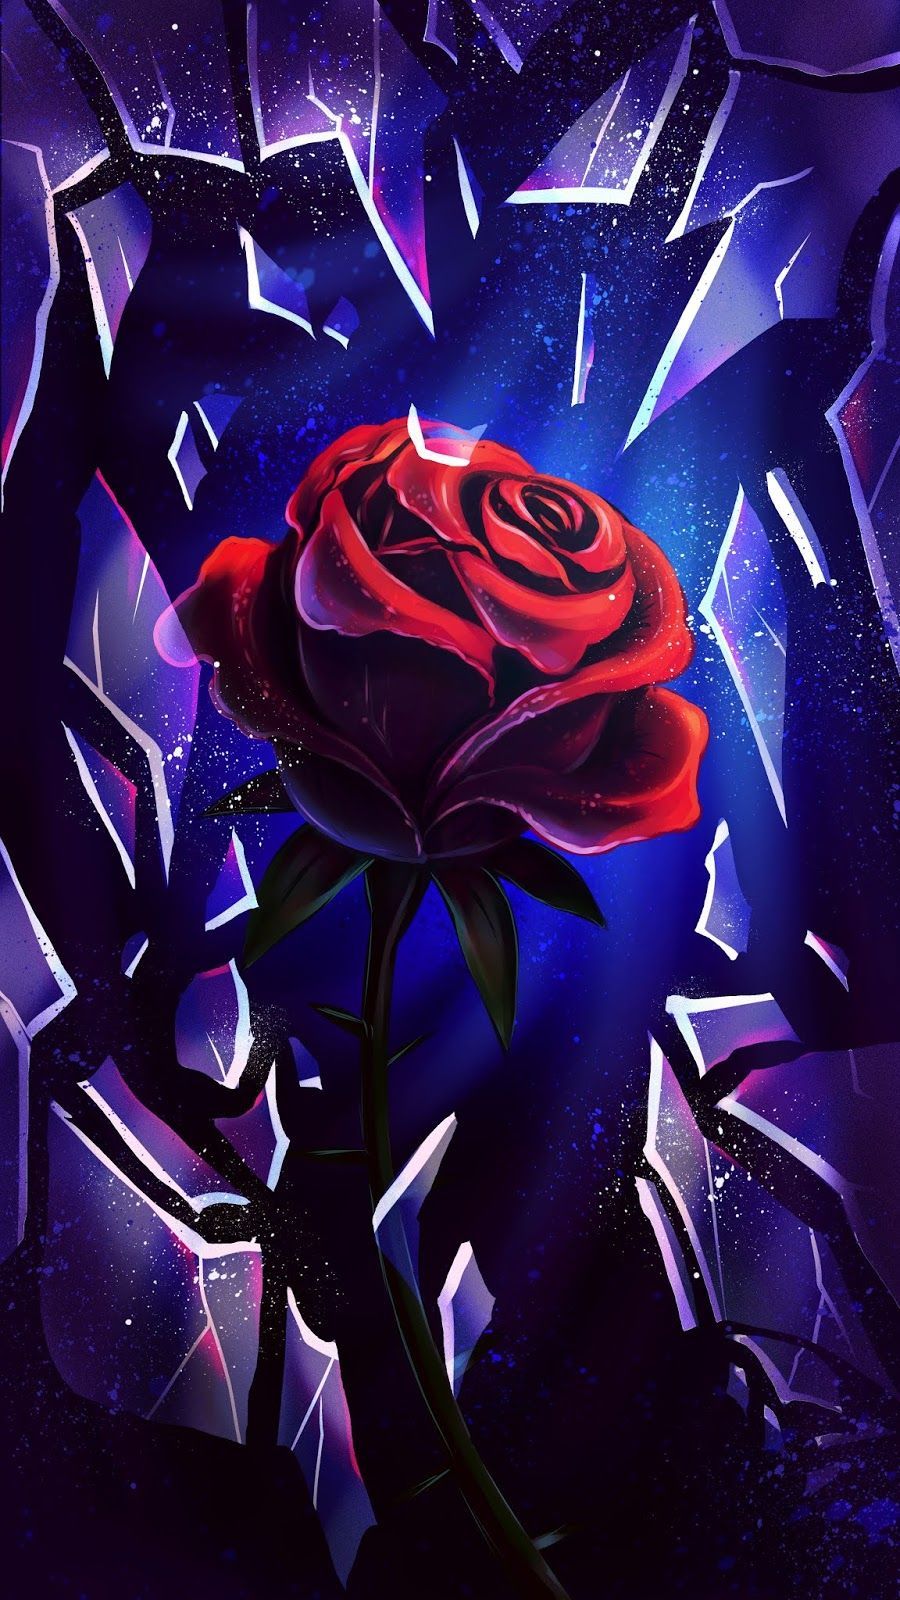 Broken Rose #wallpaper #iphone #android #background #followme. Goth wallpaper, iPhone wallpaper, Disney phone wallpaper